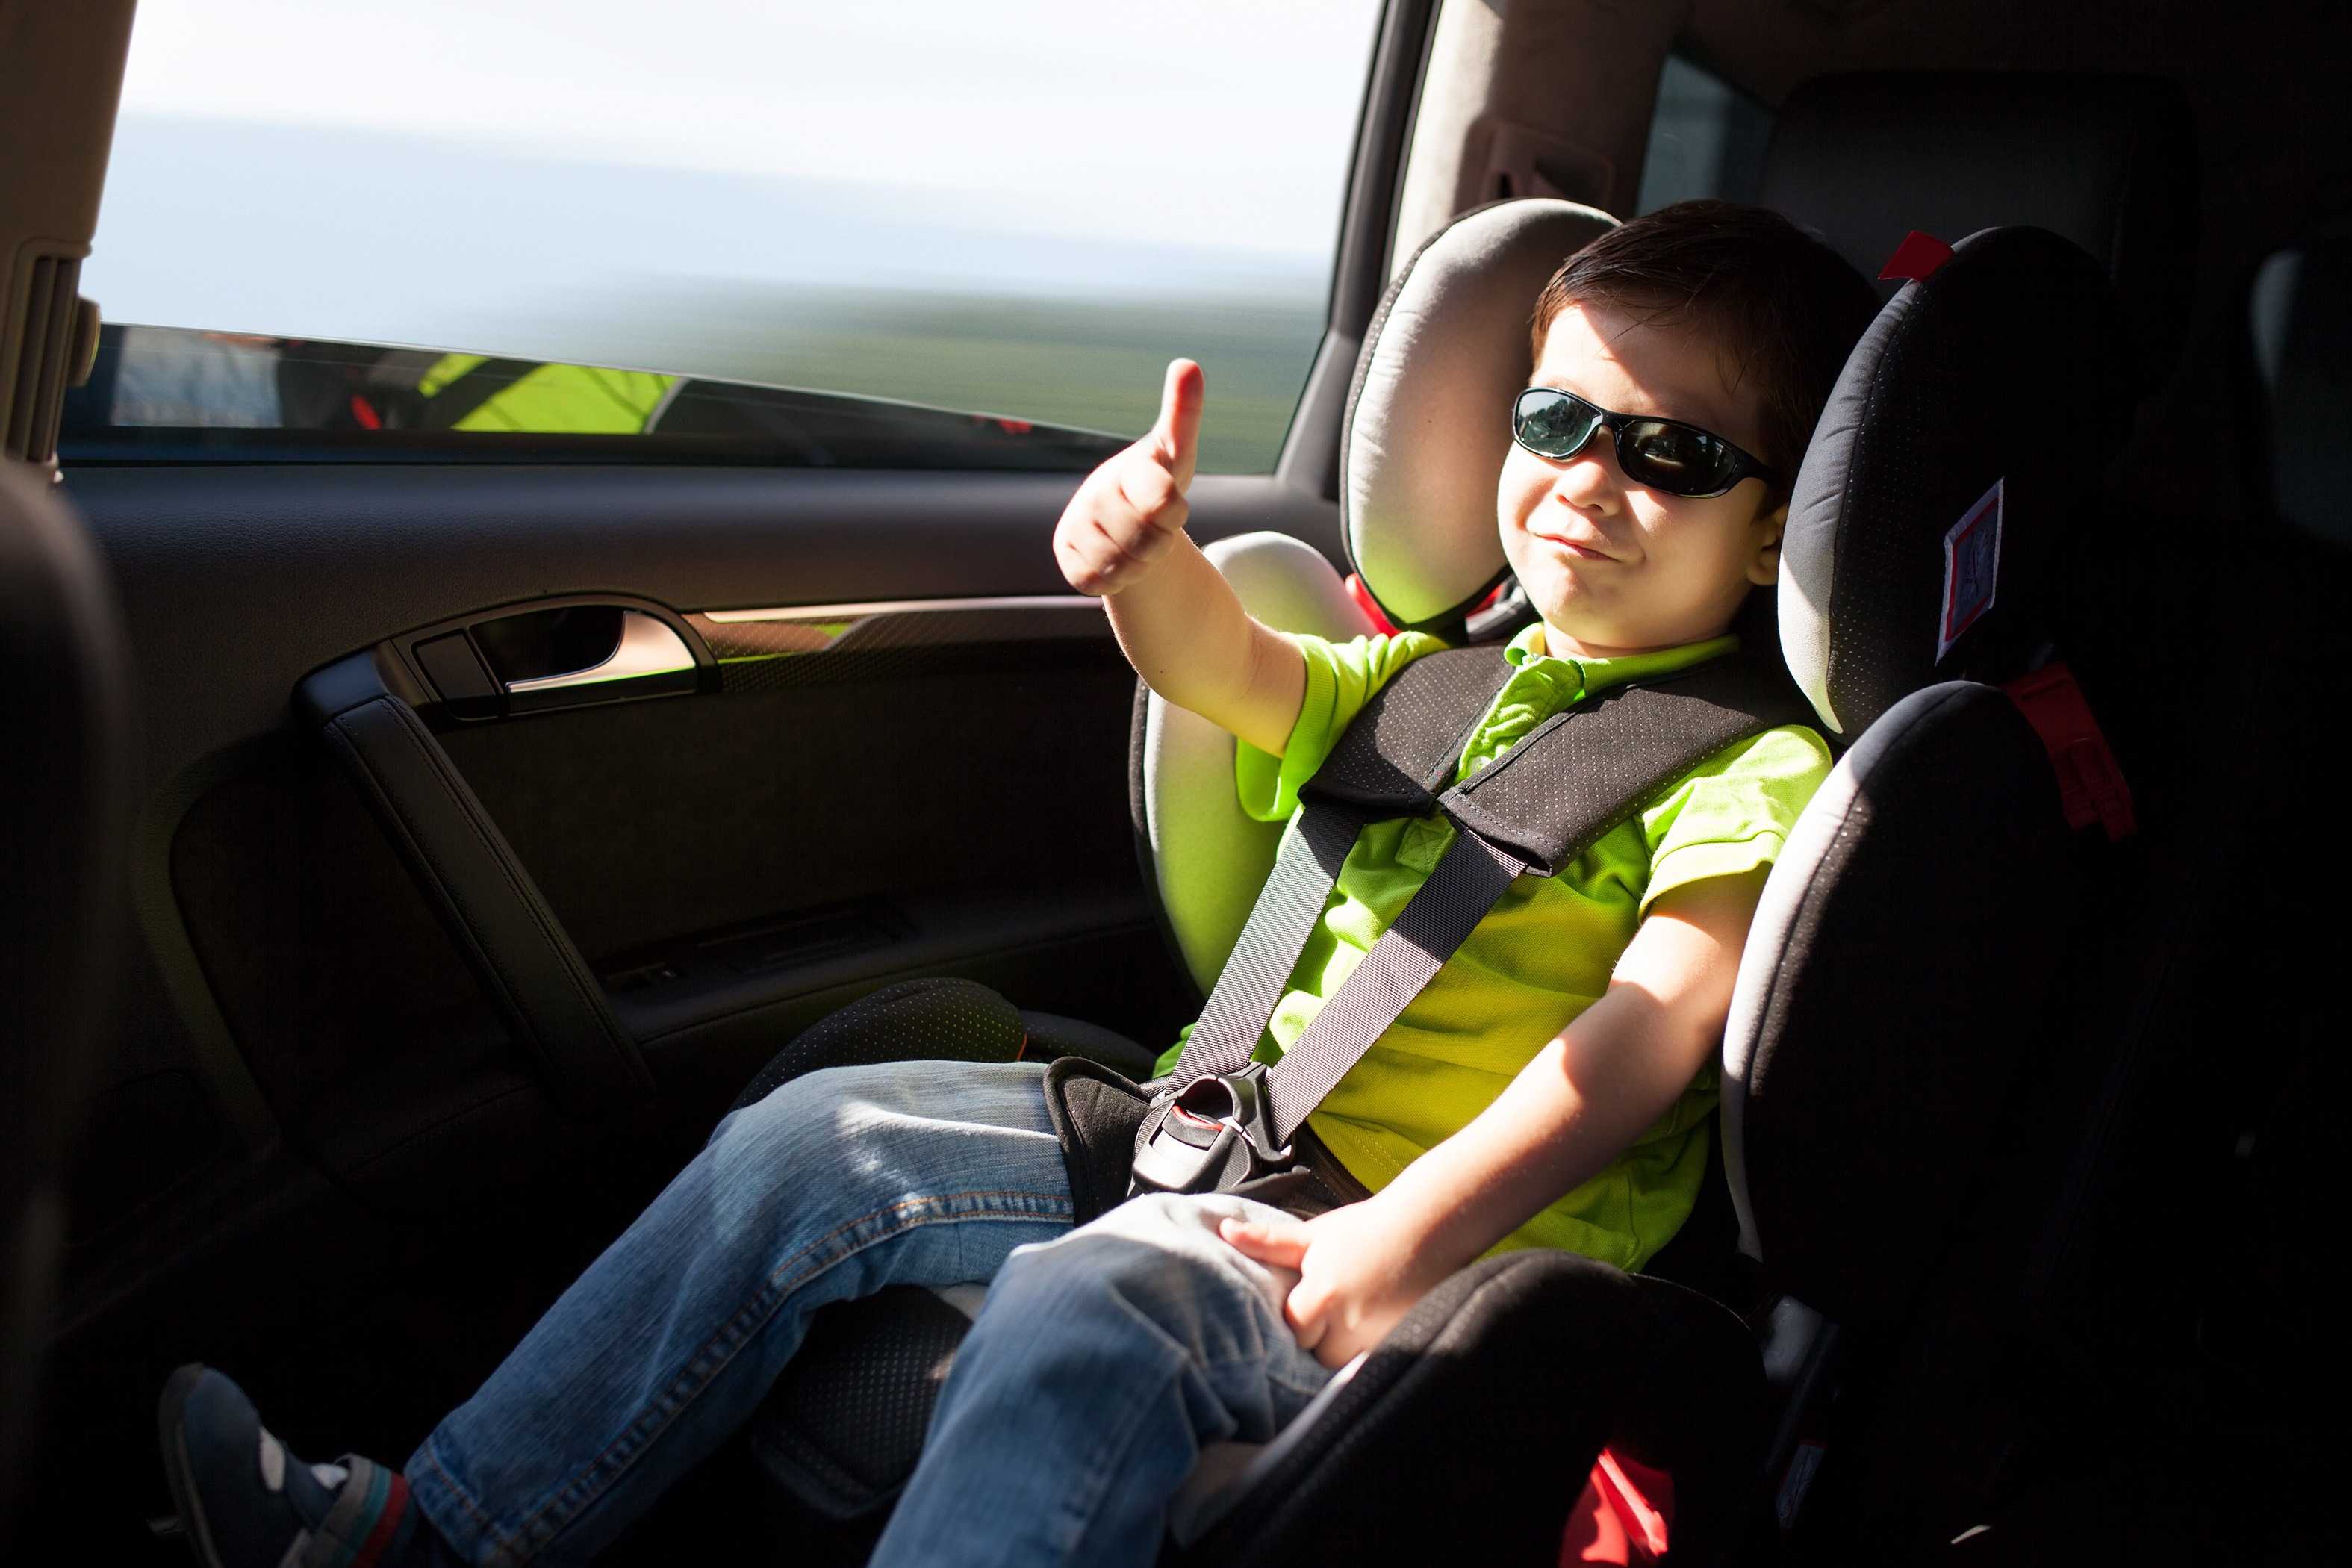 Перевозка детей в автомобильных креслах — до какого возраста ребенок должен ездить в автокресле? какой штраф за нарушение перевозки детей без кресла